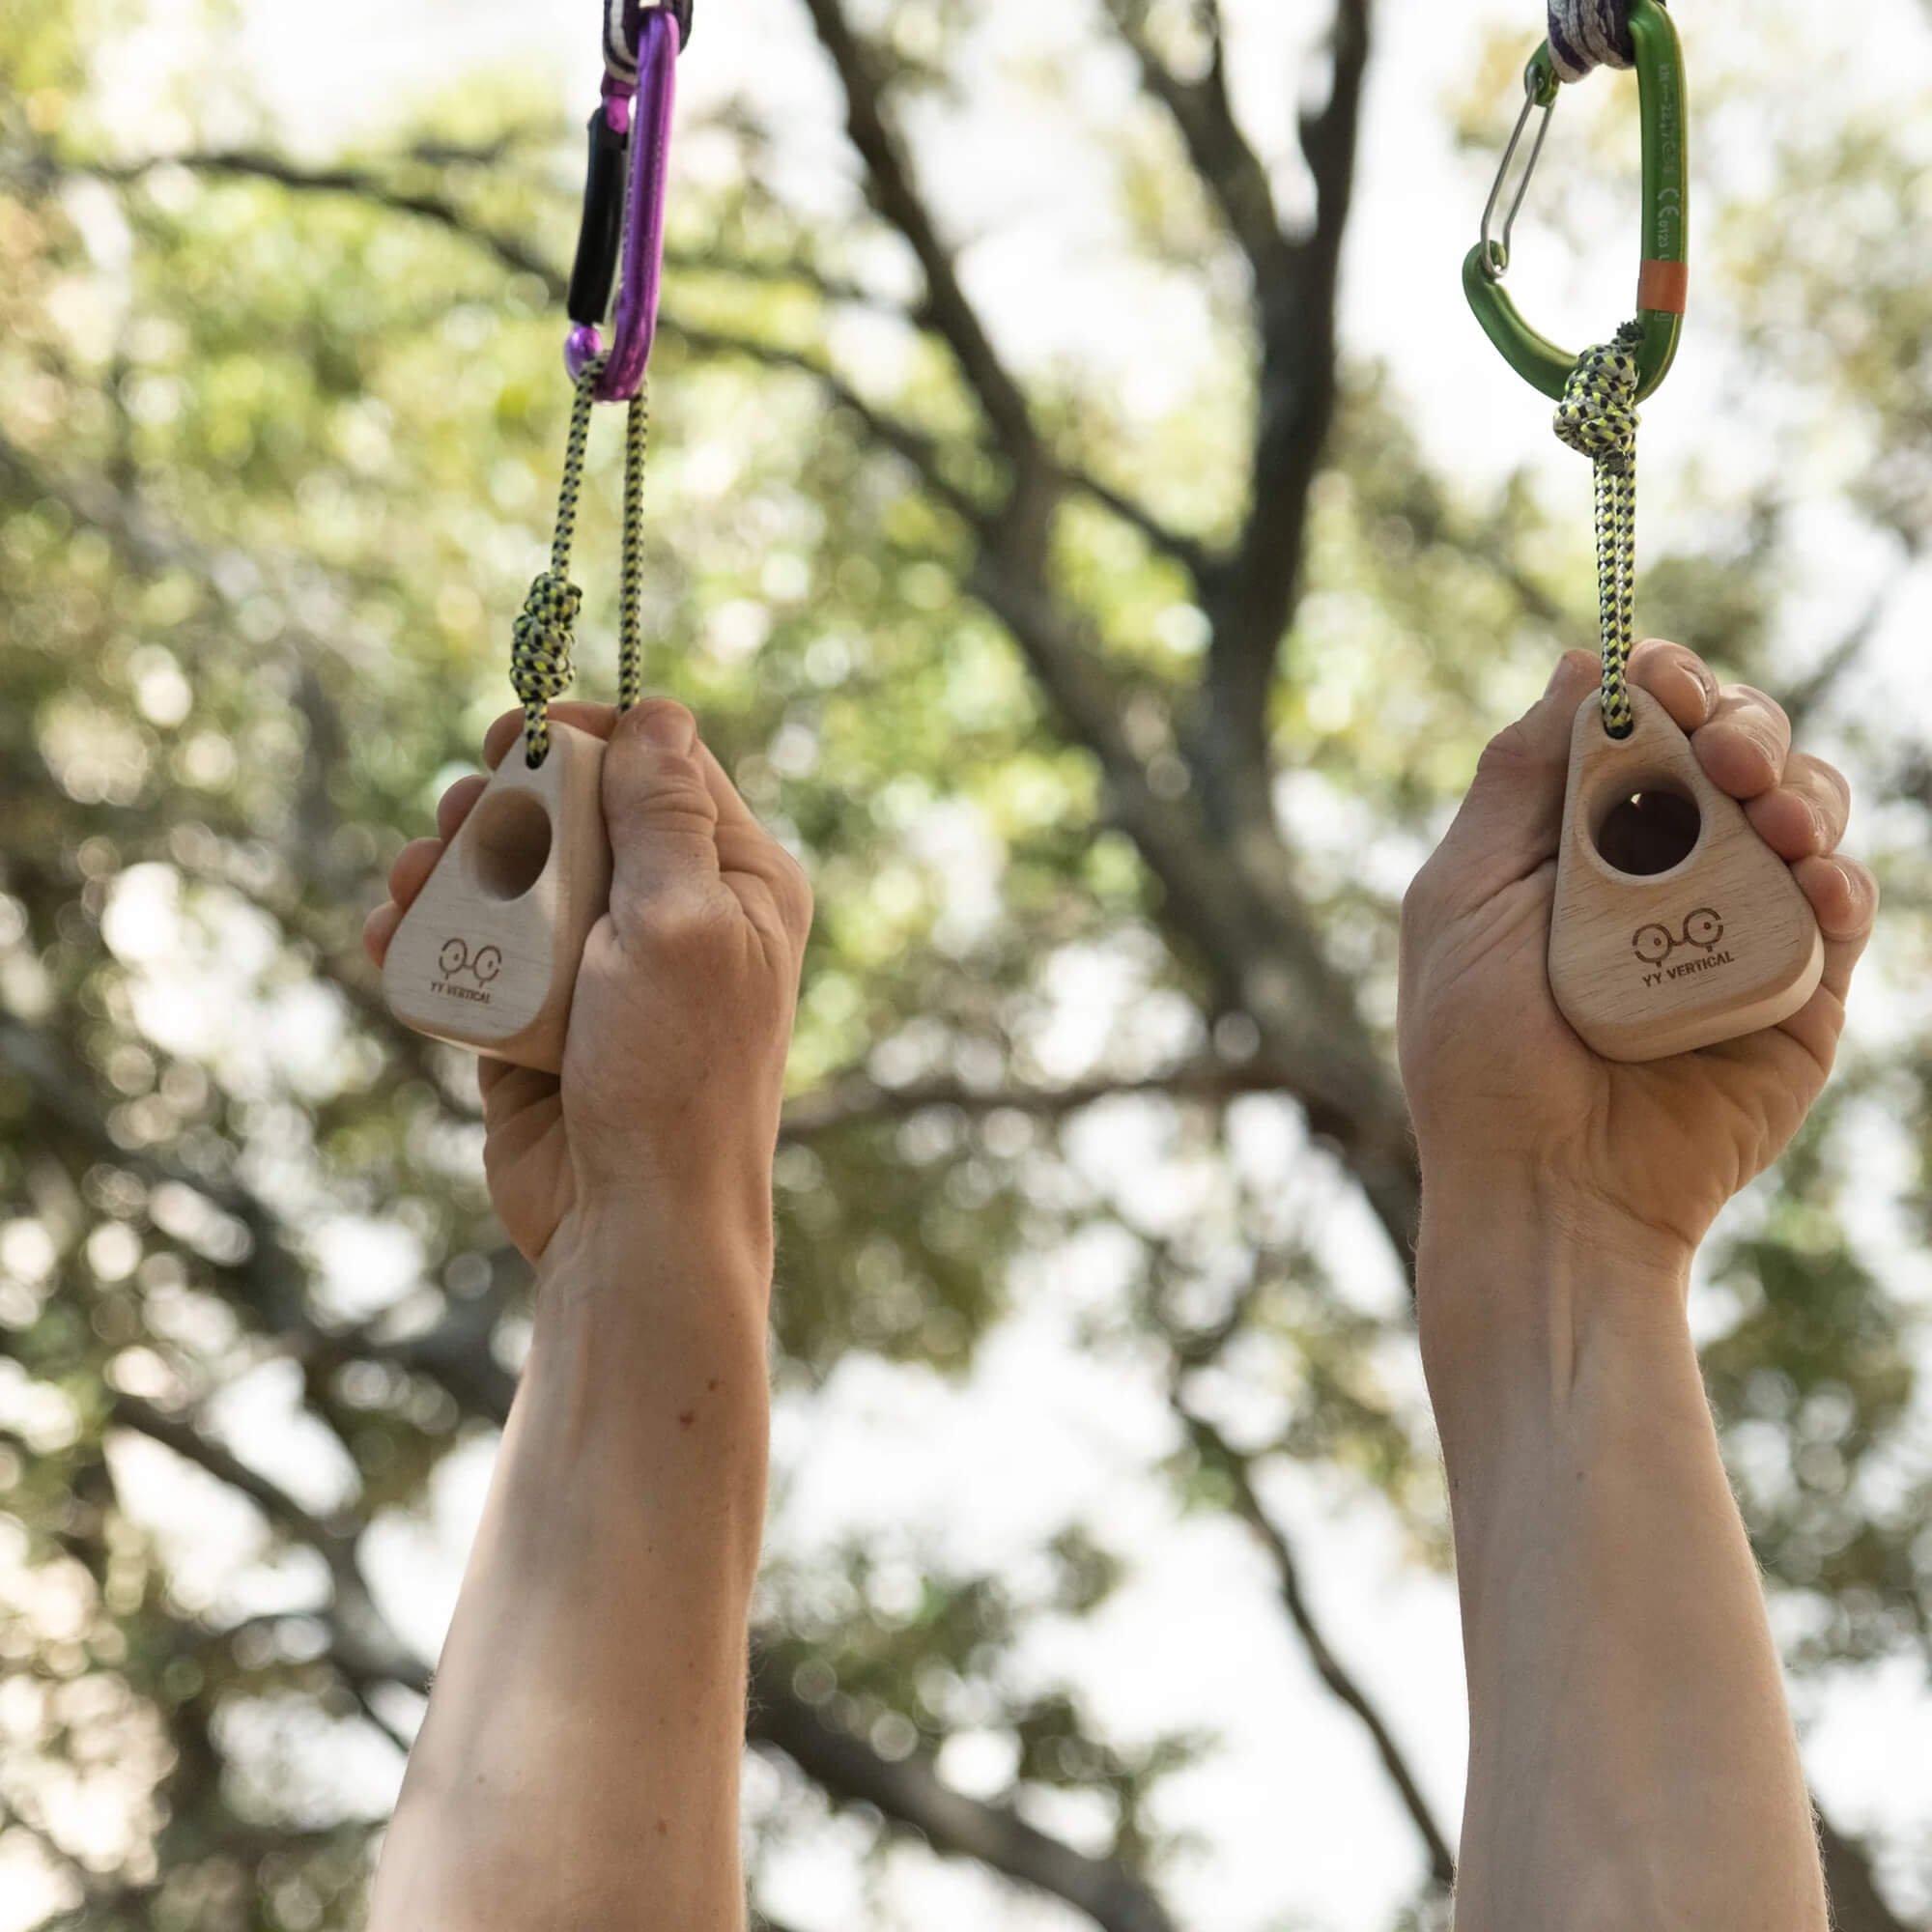 Y&Y Duo Portable Rock Climbing Finger Trainer